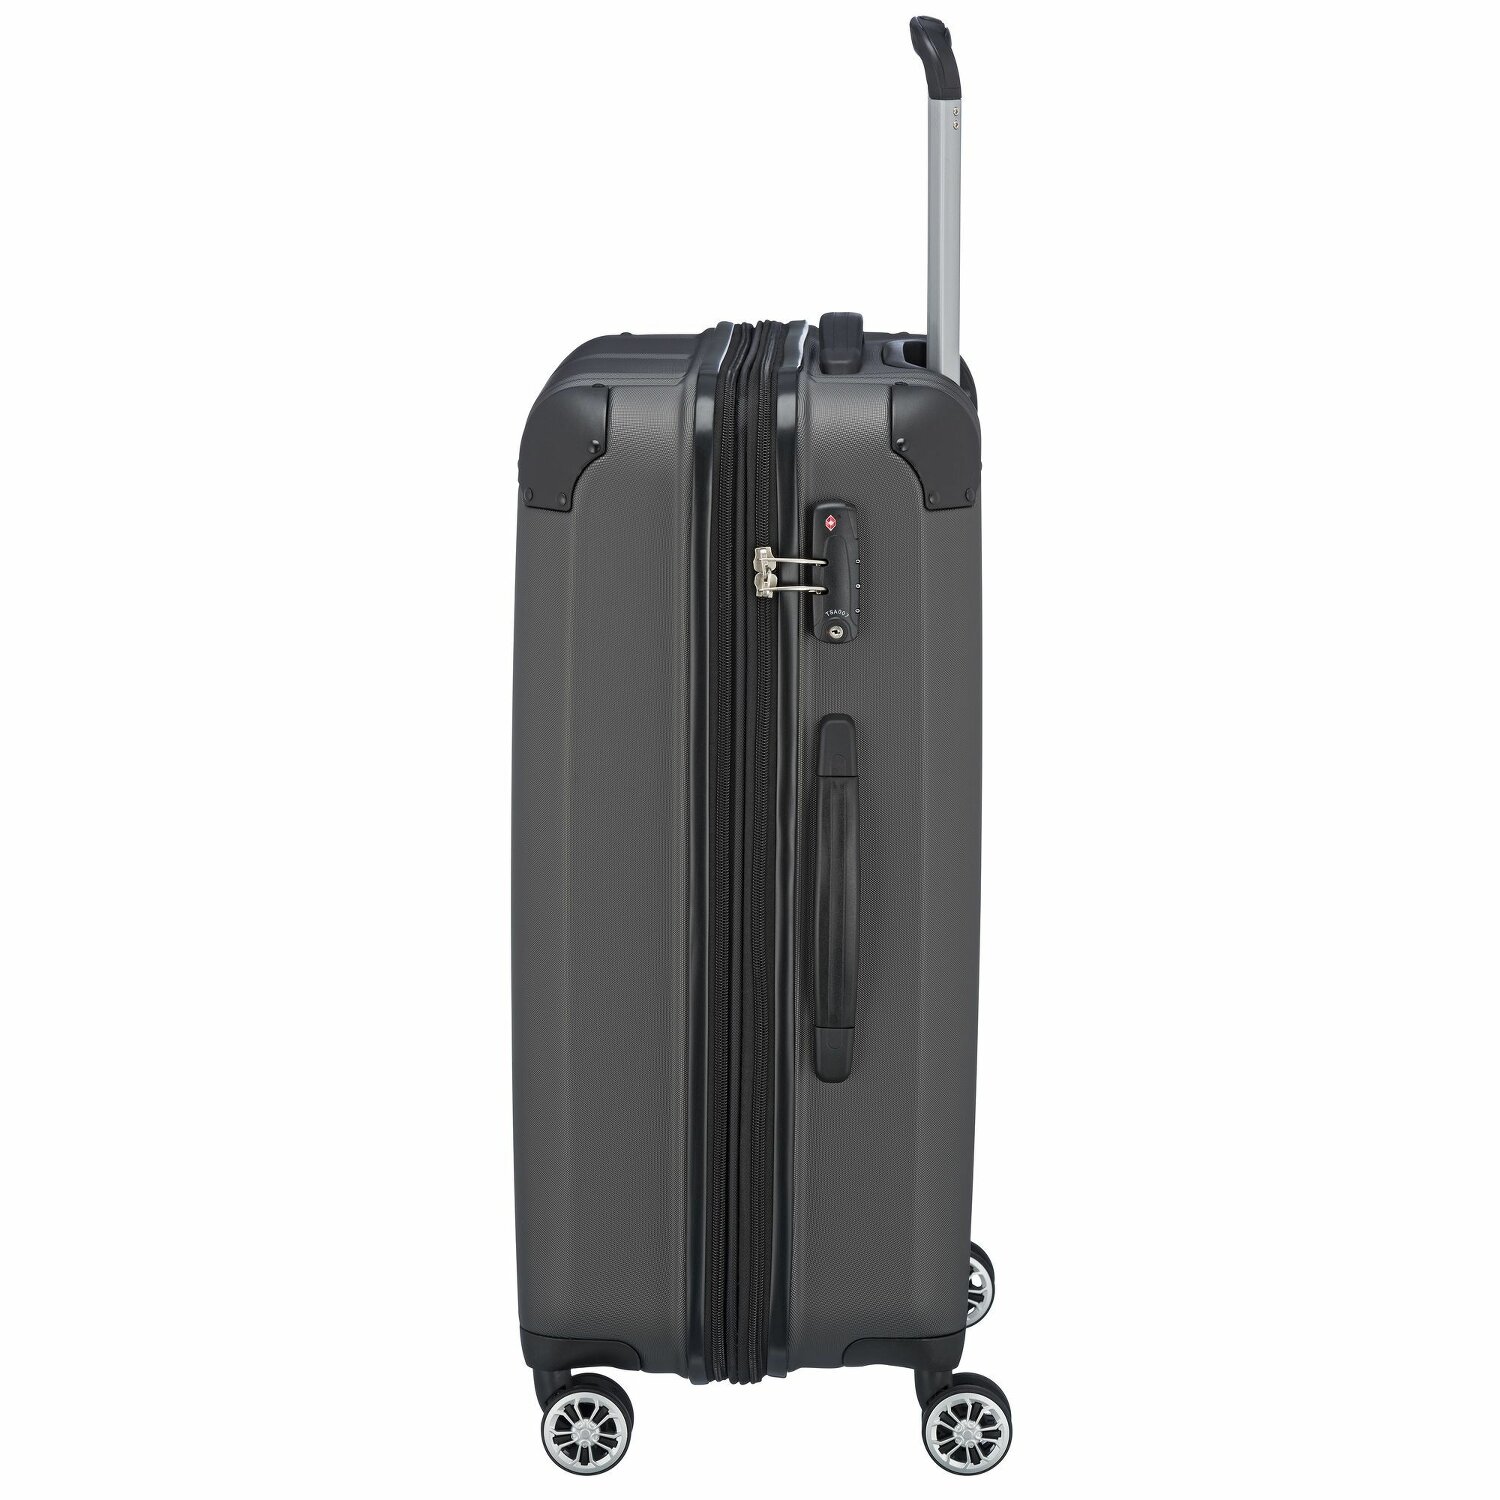 paklite valise à 2 roues taille L, série de baga…